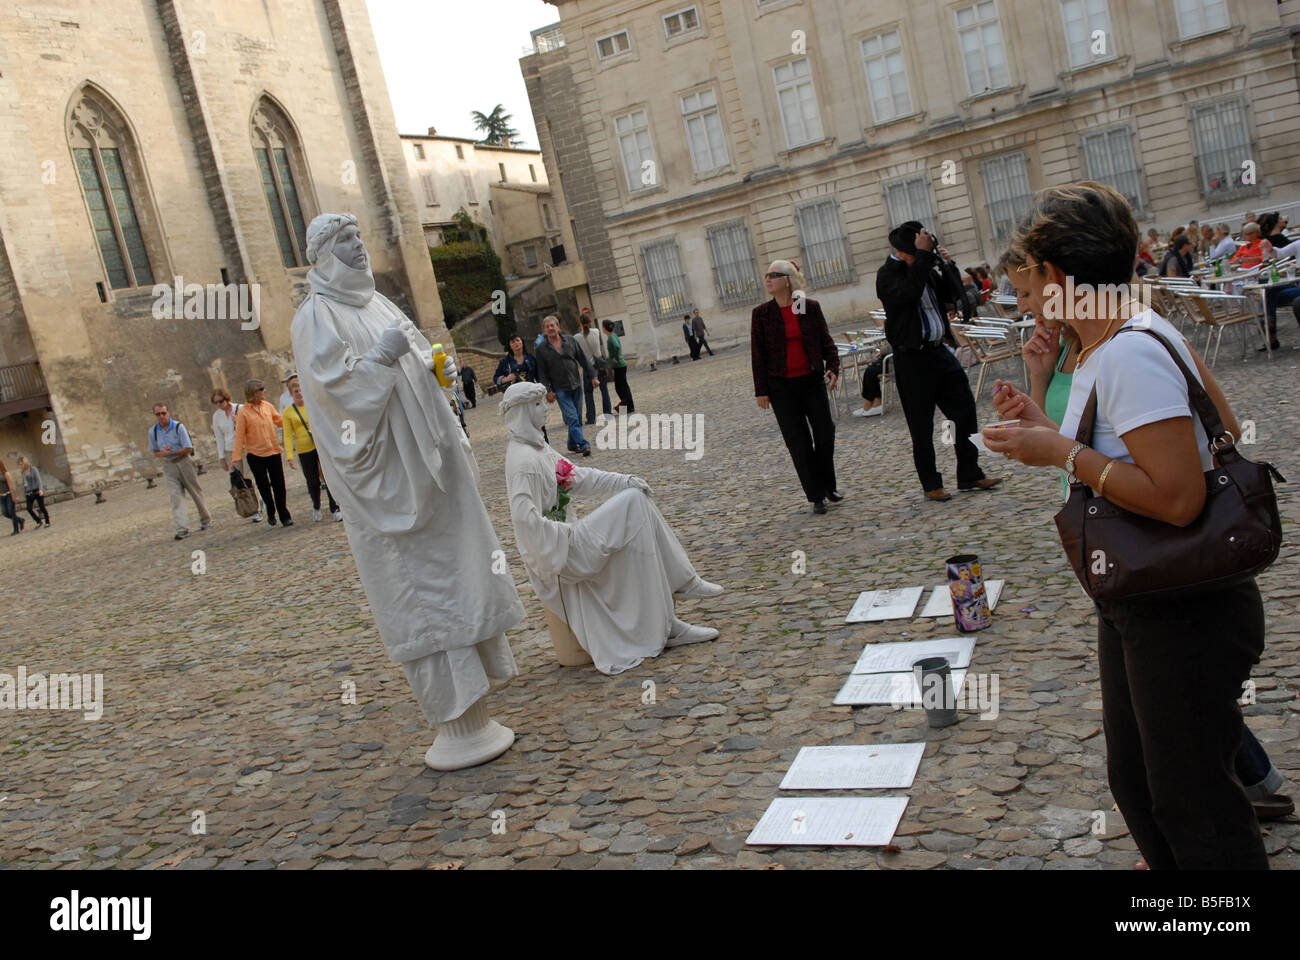 Pantomime, unterhaltsame Touristen bei der Papstpalast in Avignon Frankreich de Stockfoto